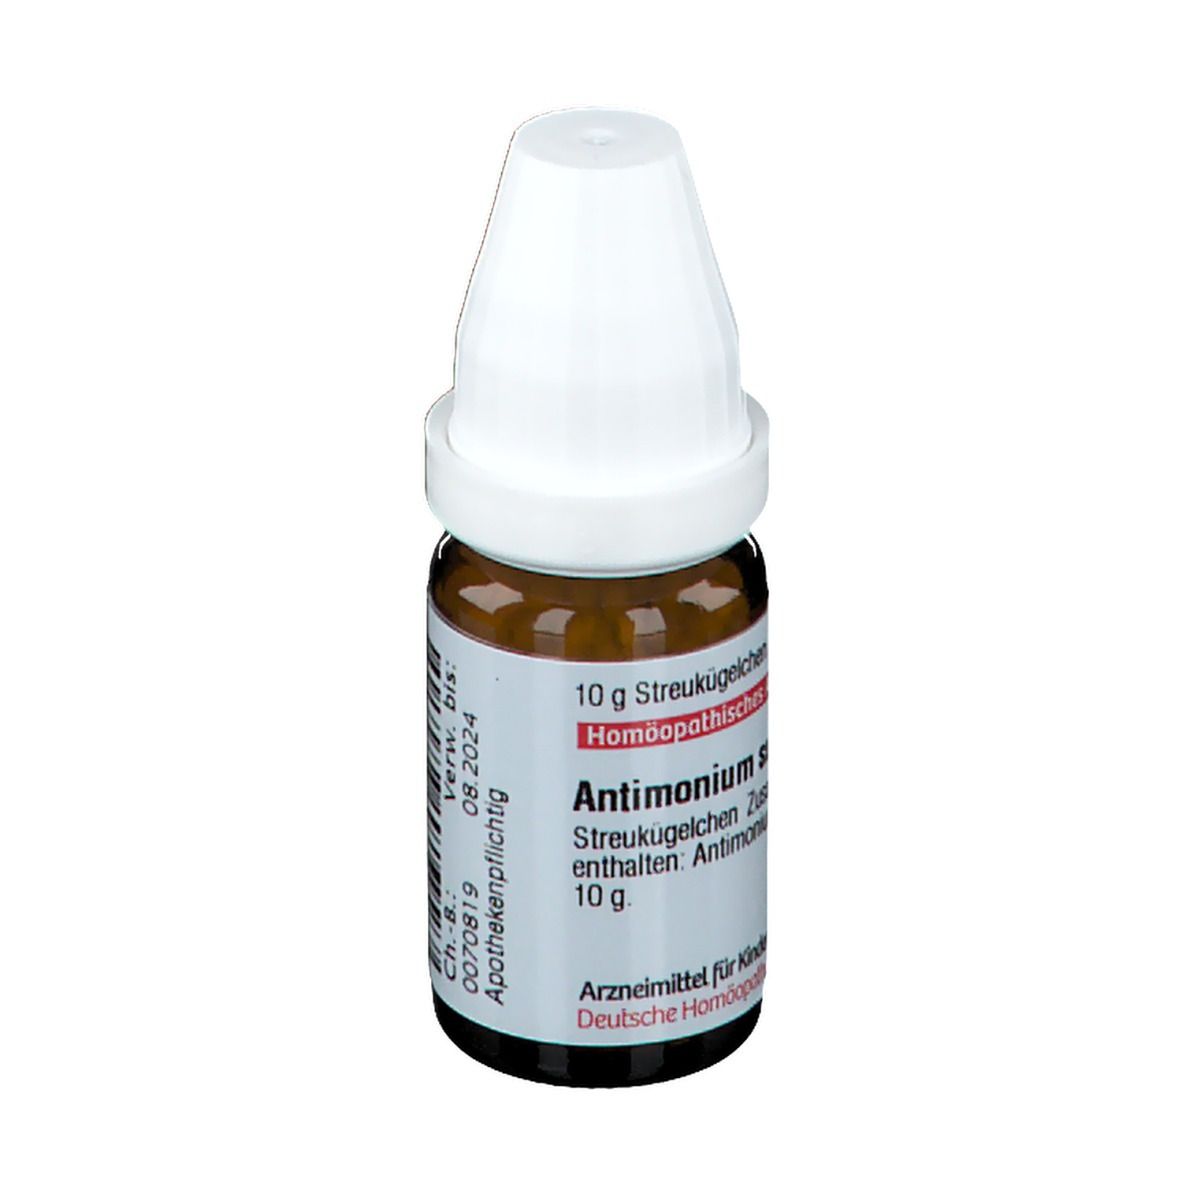 DHU Antimonium Sulfuratum Aurantiacum C30